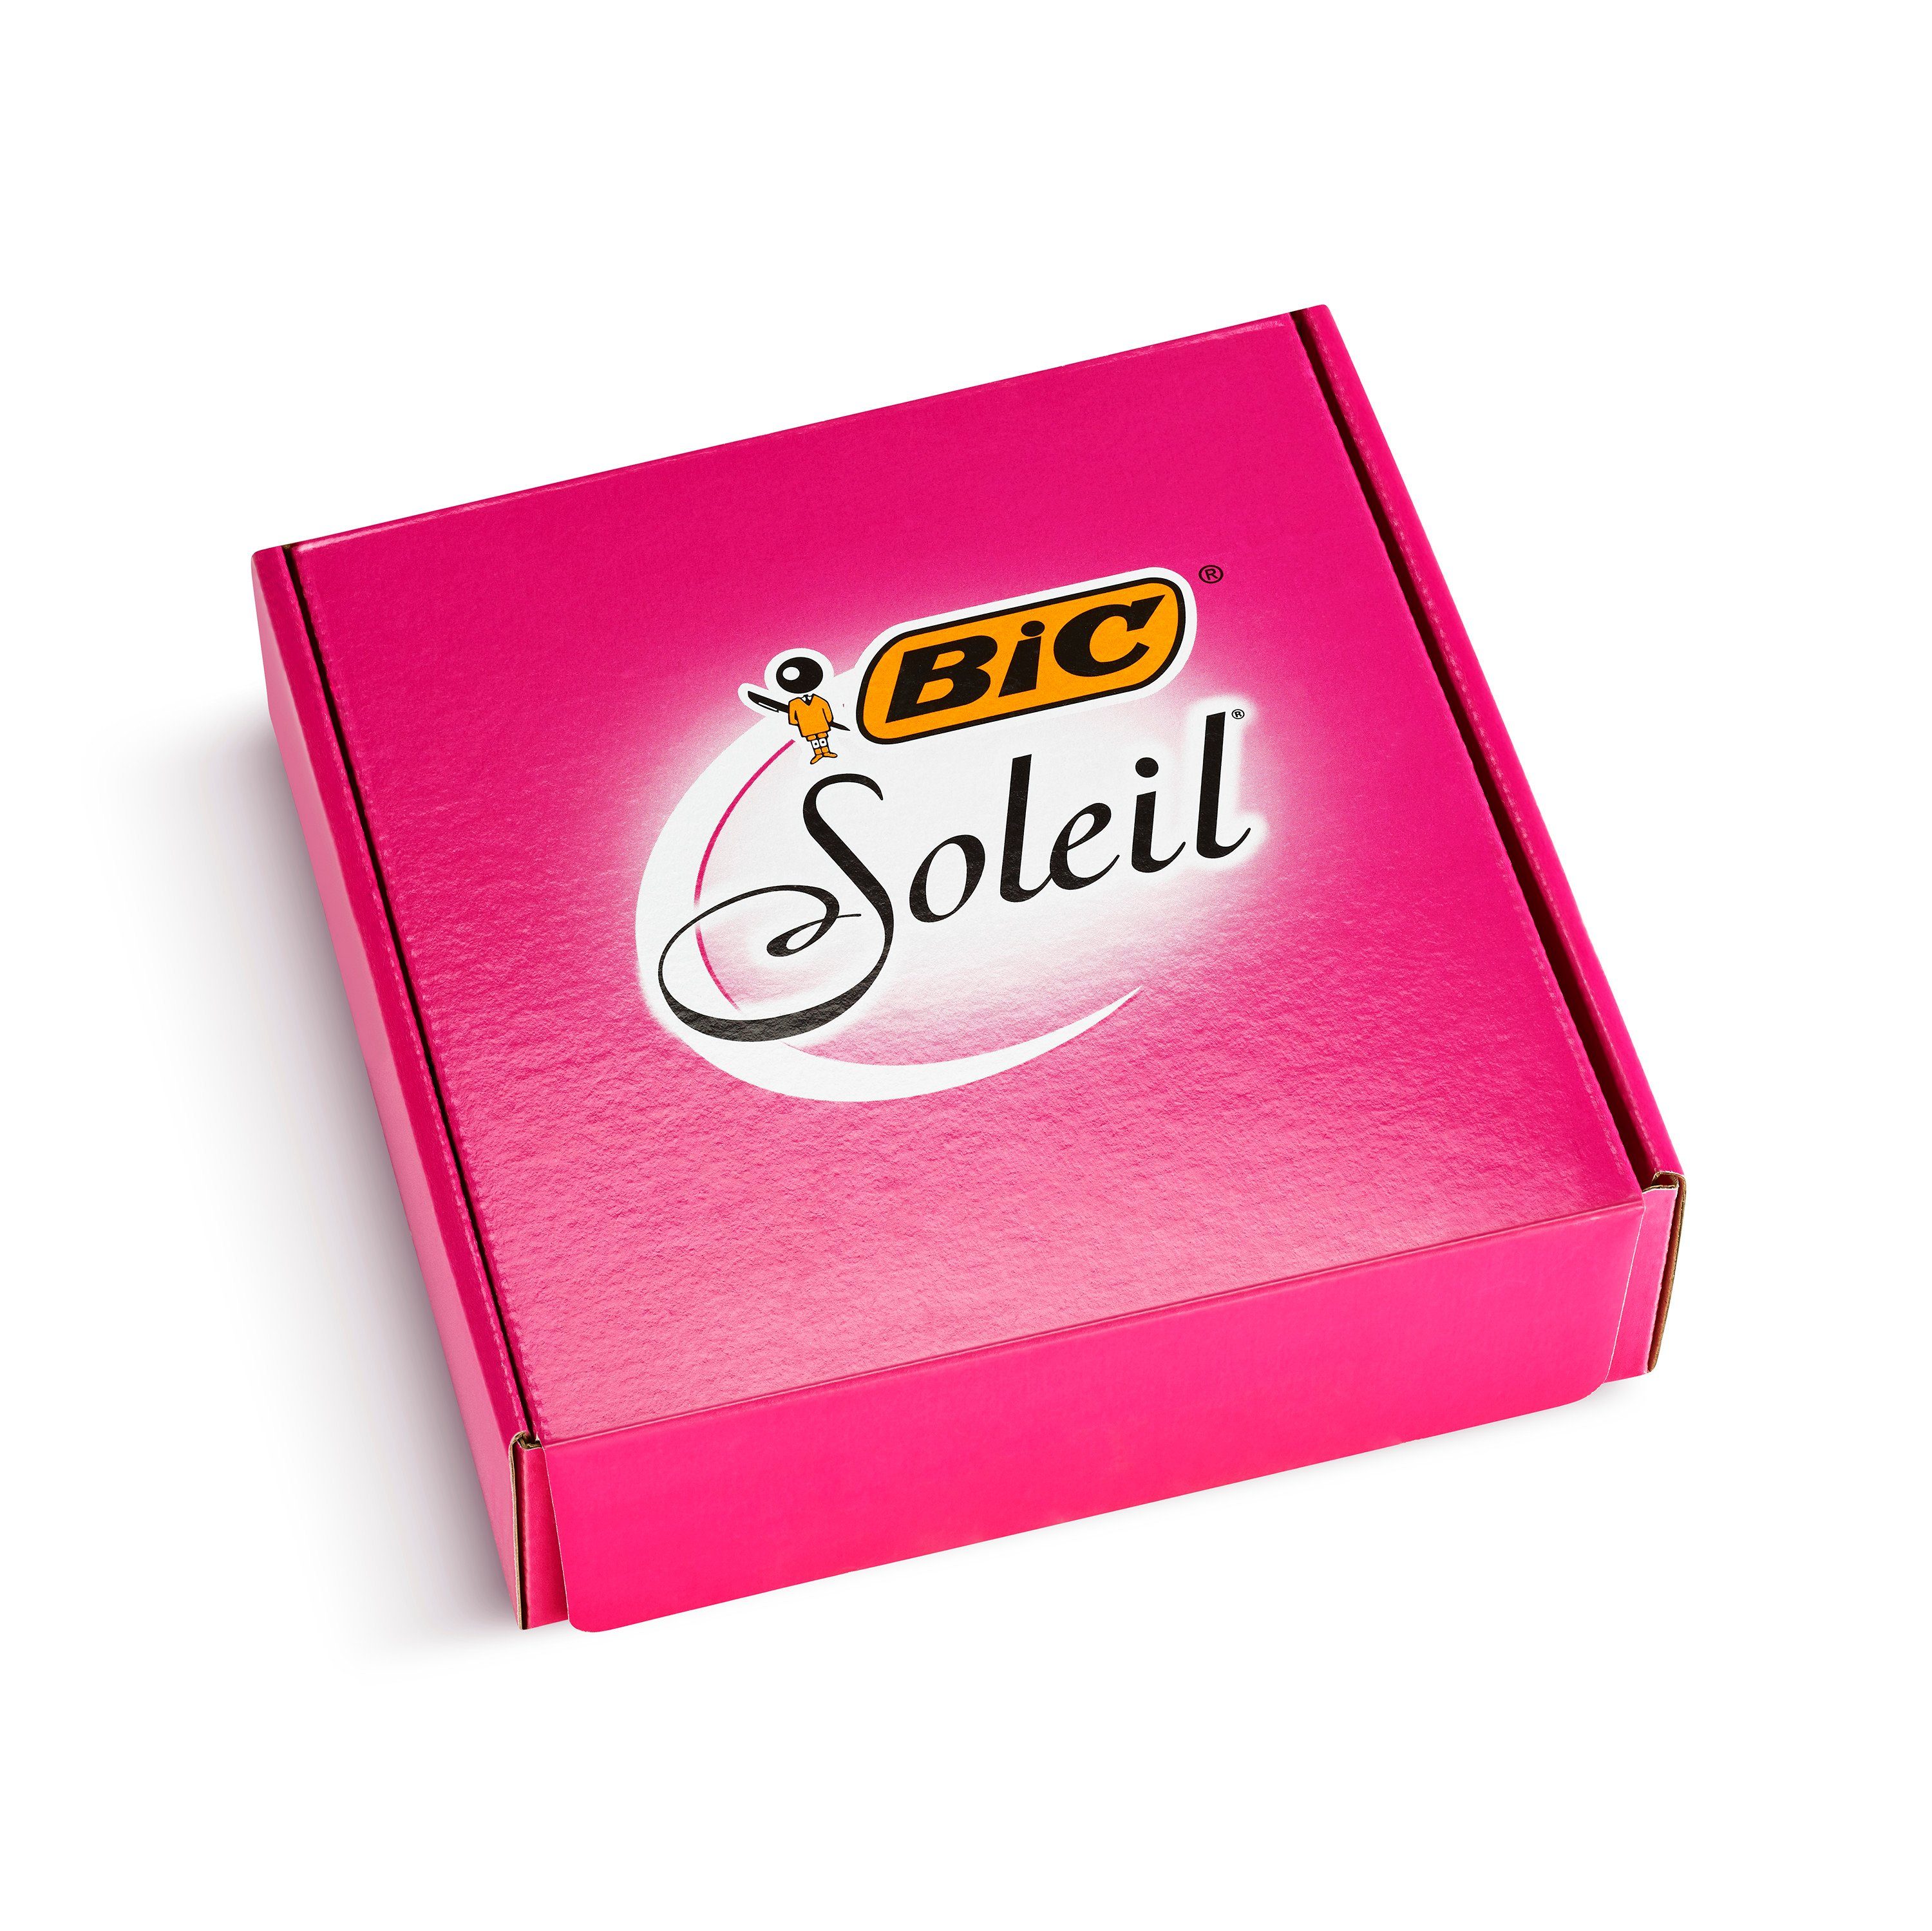 BIC Einwegrasierer BIC Miss Soleil Bella Einwegrasierer für Frauen - versch. Farben, 10er Pack, 10-tlg.